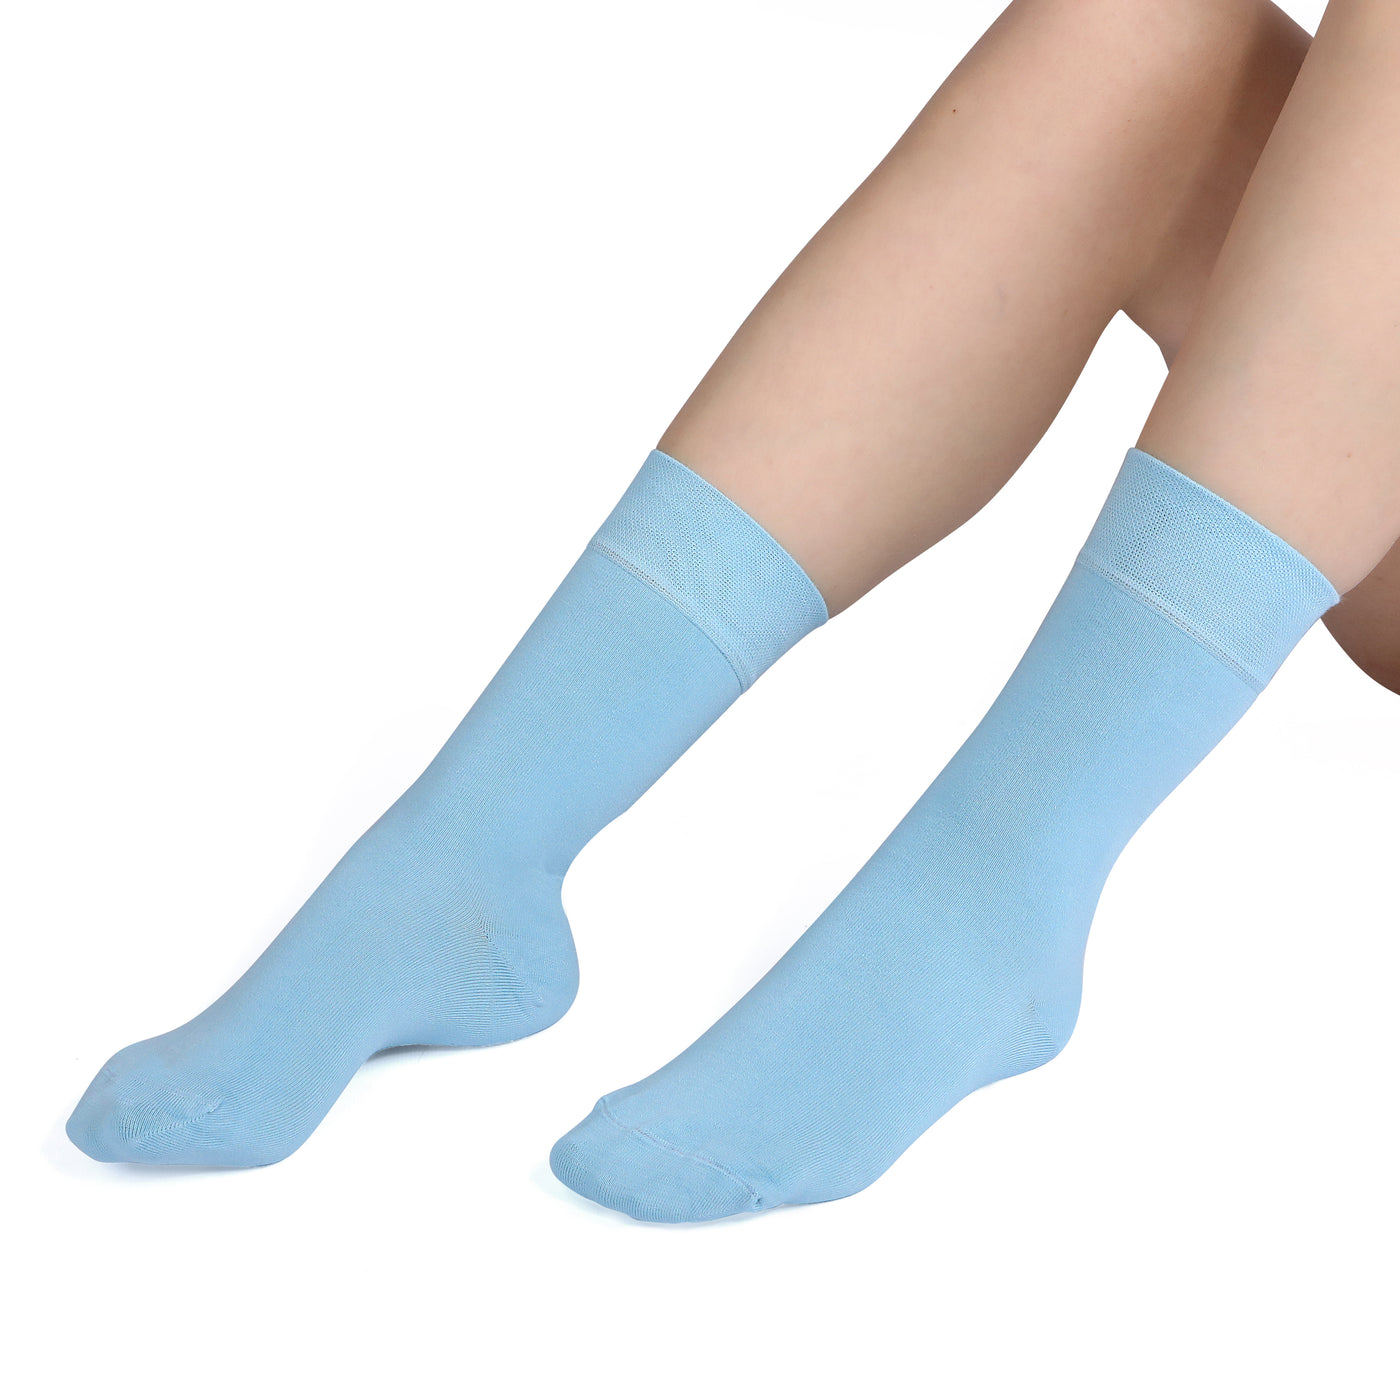 Elyfer-Socks-Pool-Blue-Bamboo-Crew-Socks-for-Women #color_blue